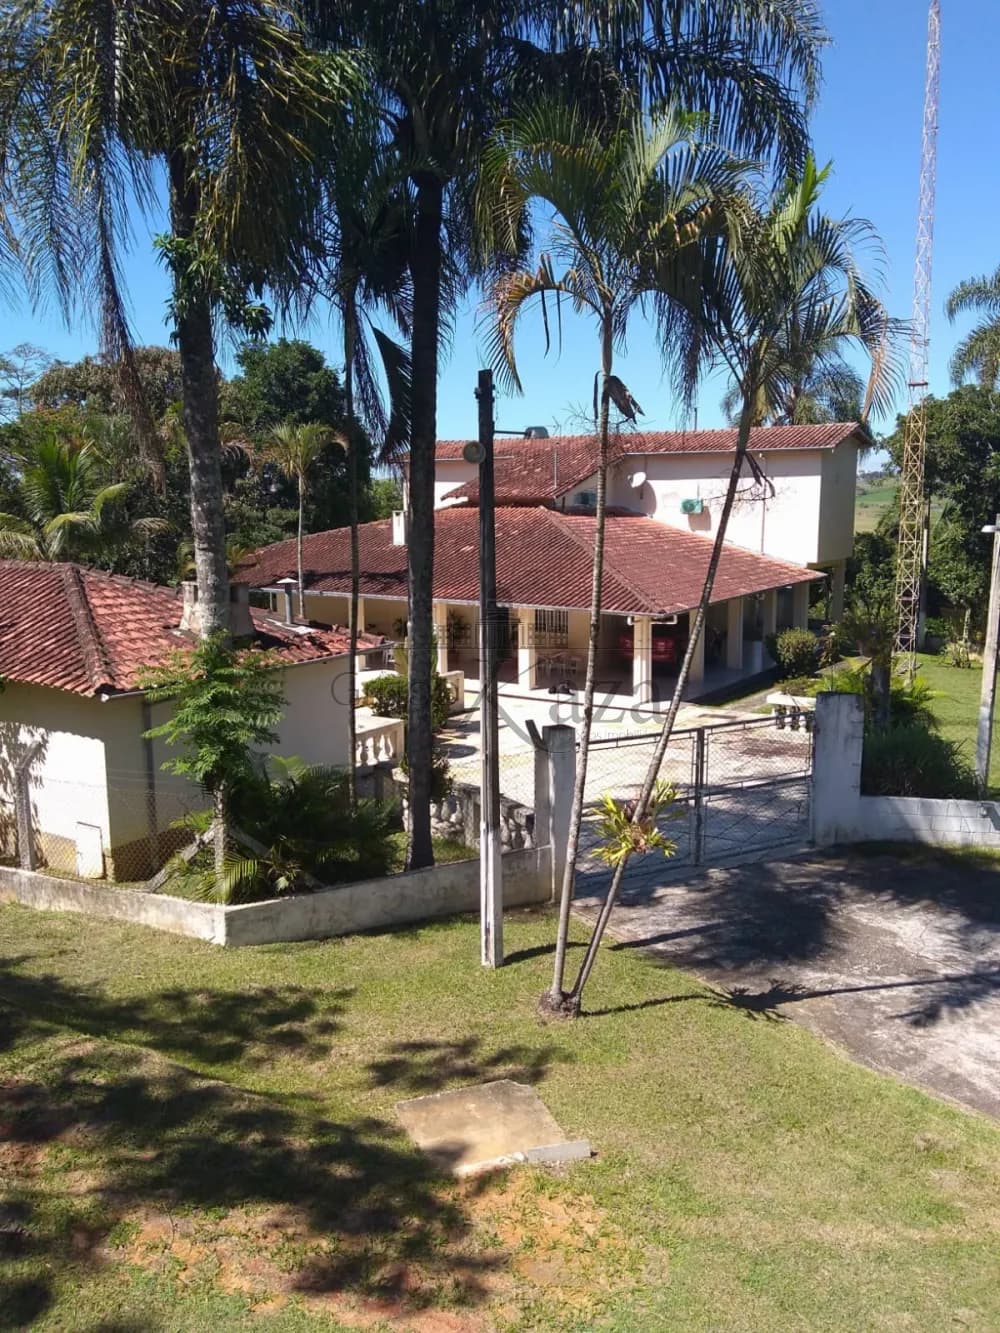 Foto 1 de Rural Chácara em Condomínio Residencial Jaguari - Área 5, São José dos Campos - imagem 1